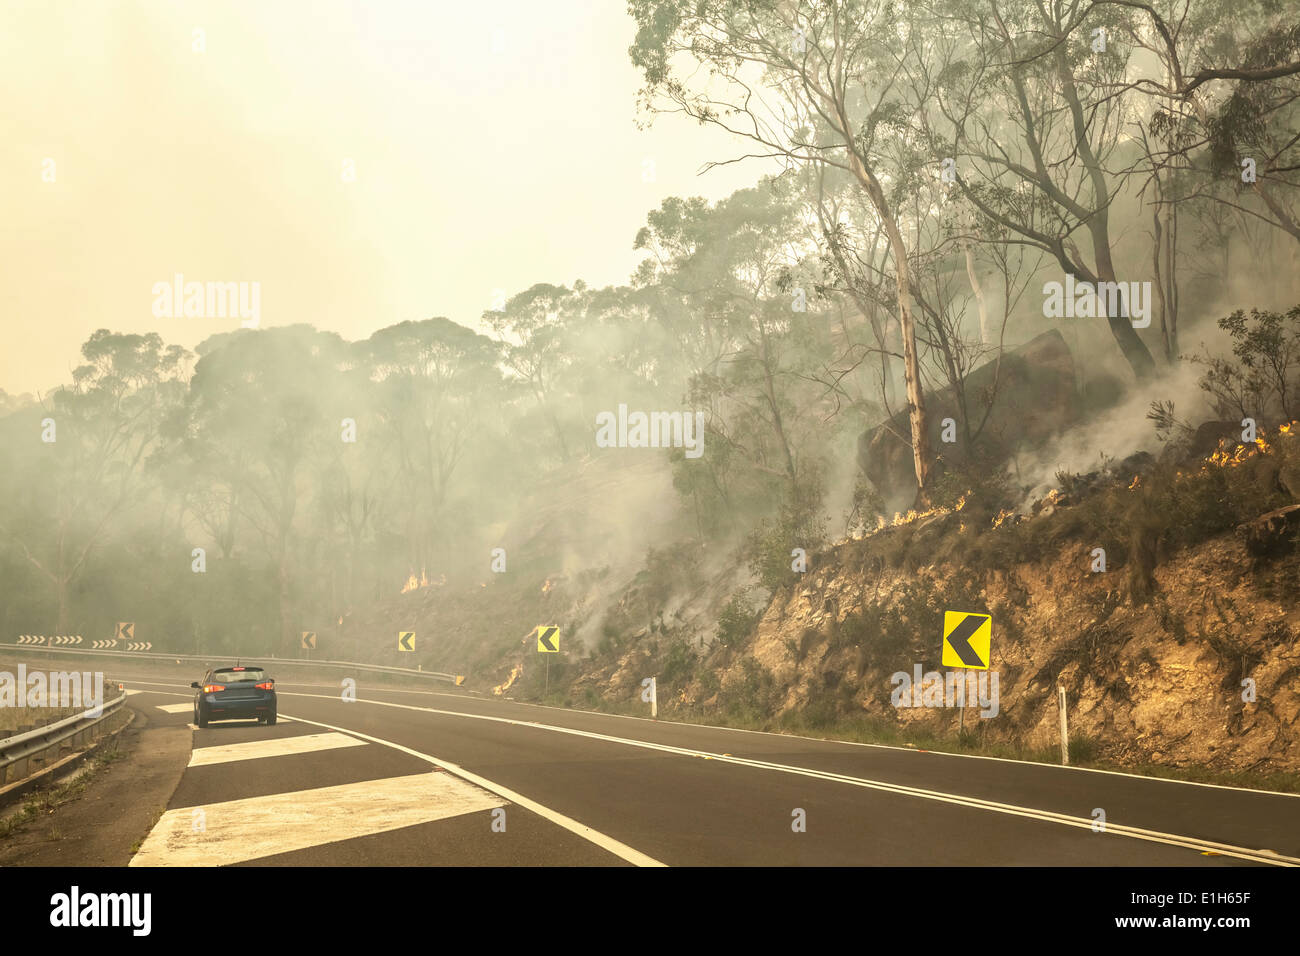 Feu de brousse et l'autoroute, New South Wales, Australie Banque D'Images